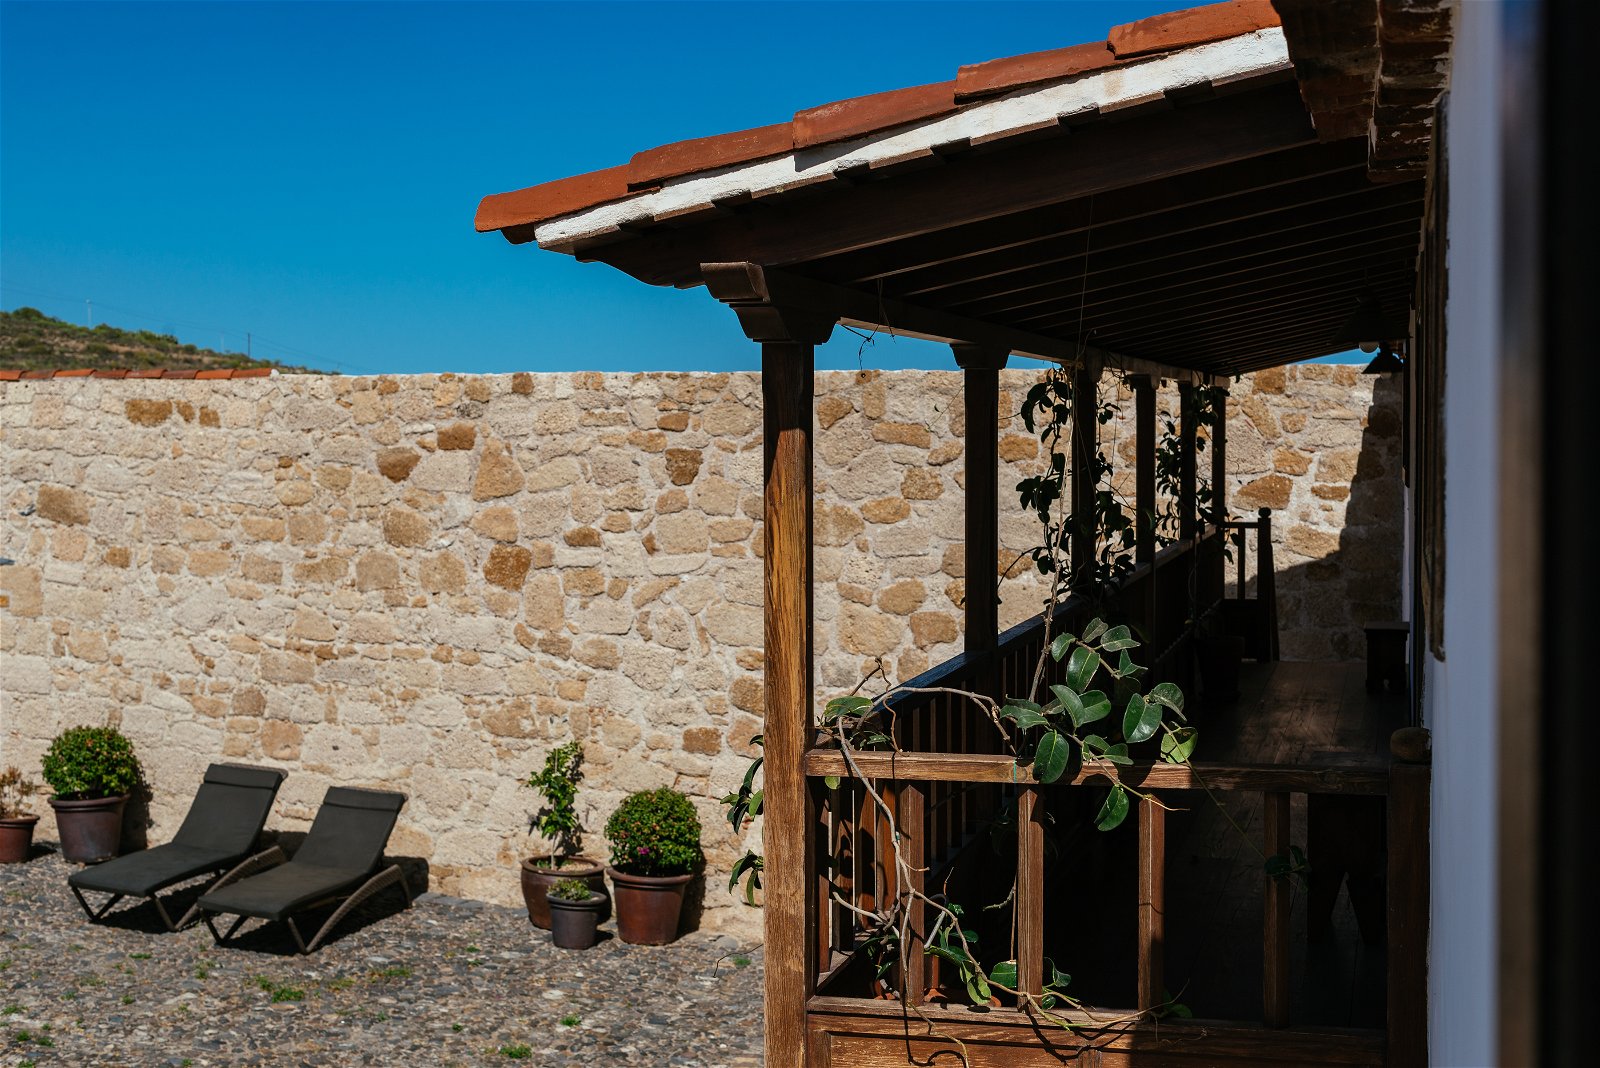 El exterior de una de las casas, se muestra el balcón rústico y las paredes construidas con piedra típica canaria.